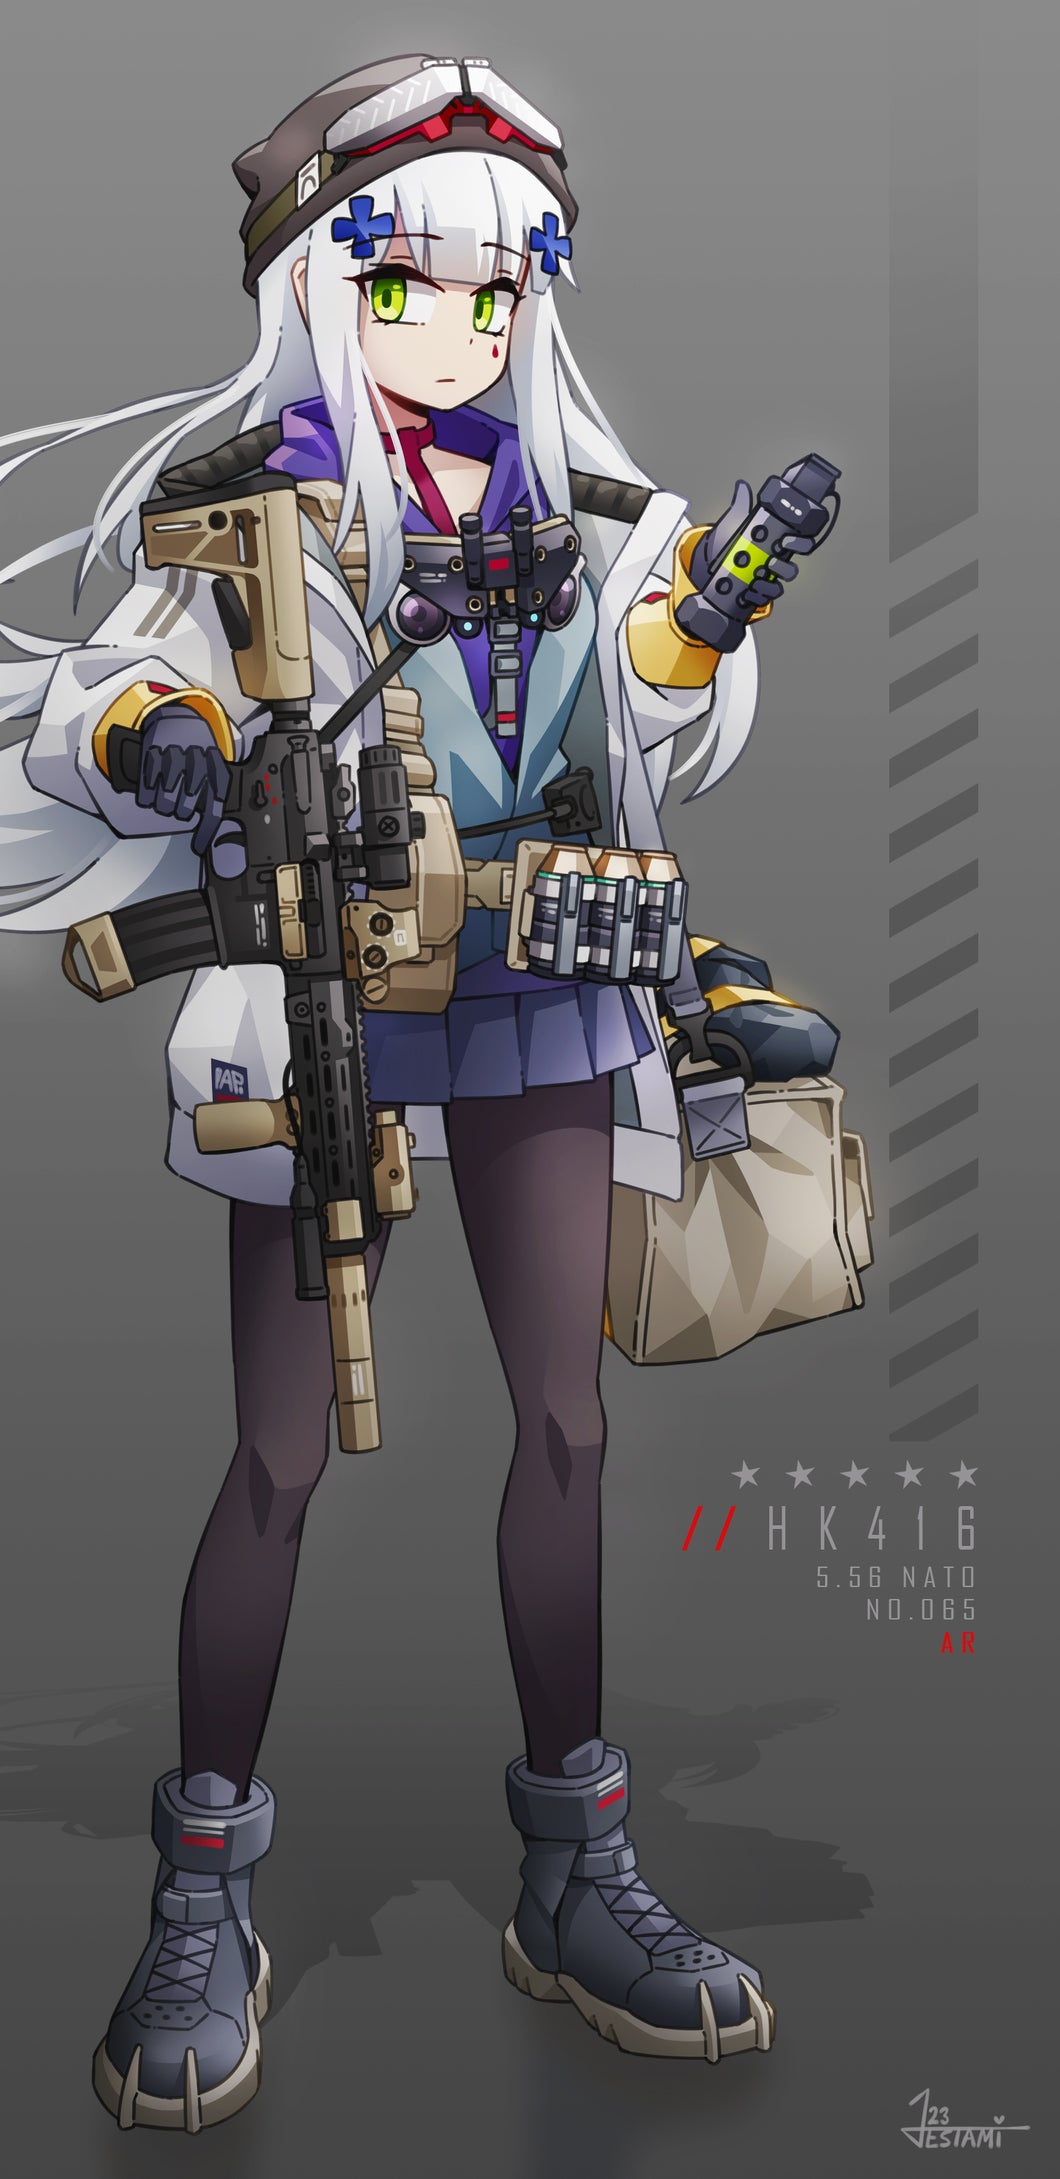 HK416